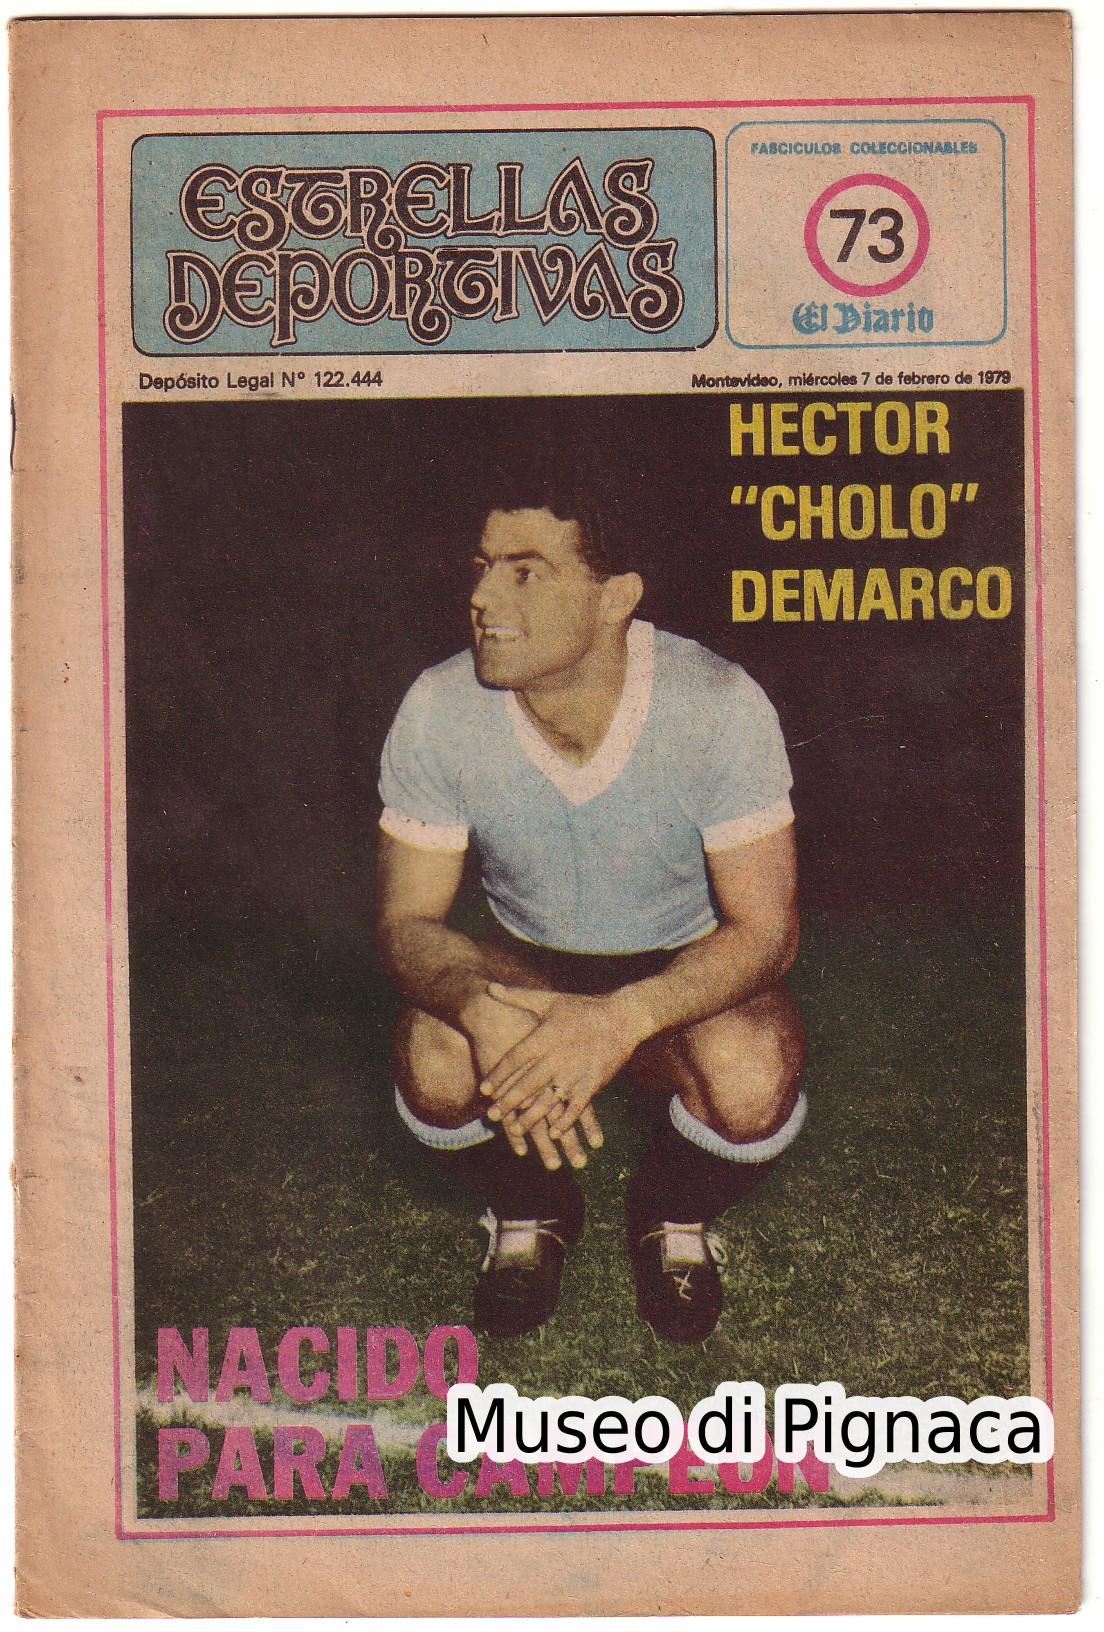 Estrellas Deportivas (Magazine Uruguay) dedicato ad Hector Demarco